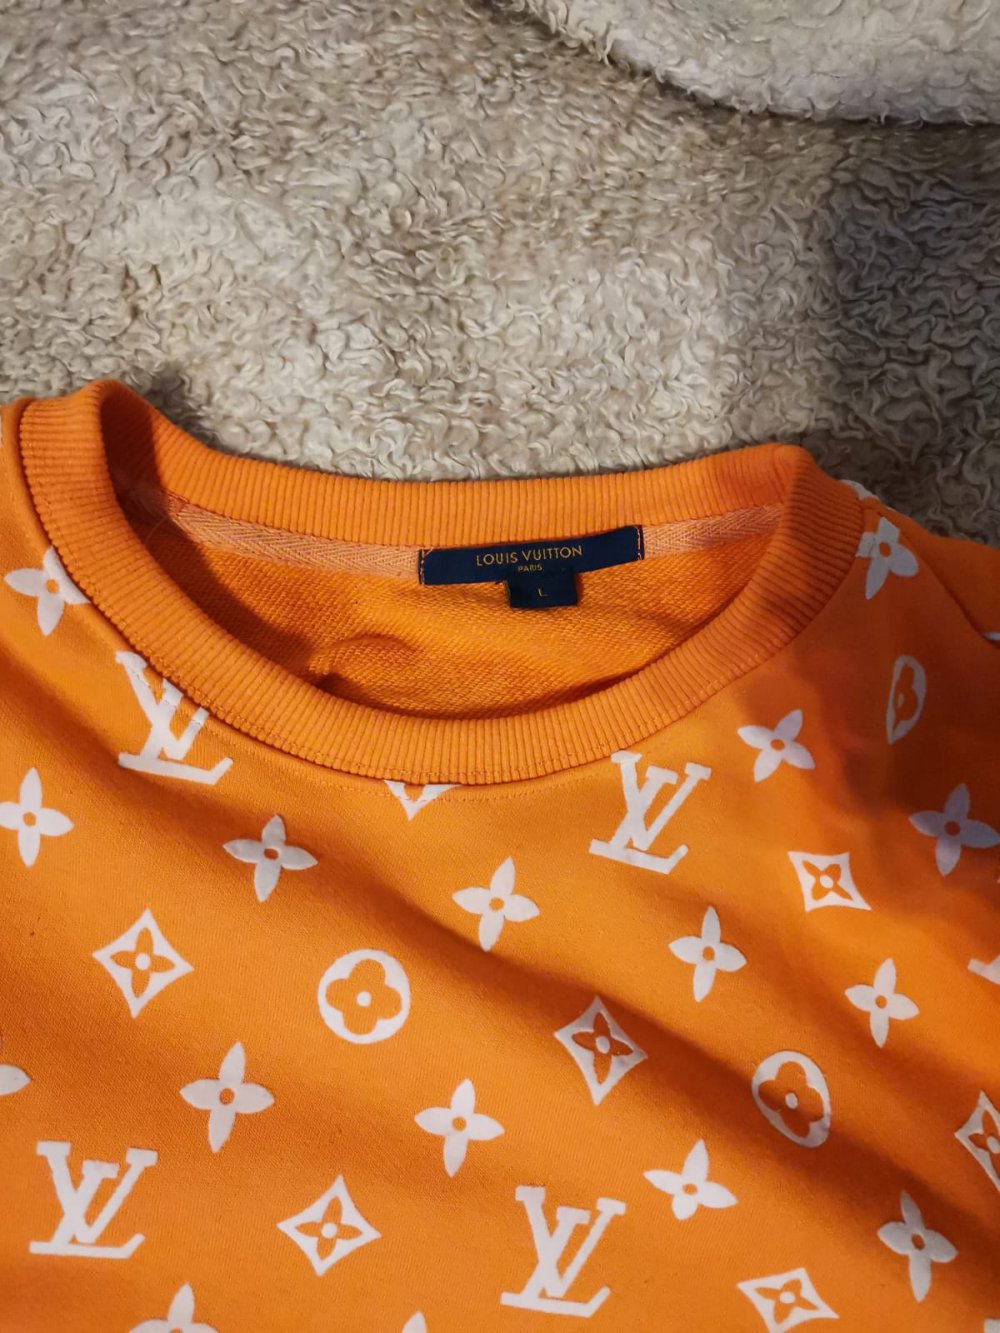 Louis Vuitton Orange Monogram sweater worn by Lil Uzi Verts on his  Instagram Account @Liluzivert